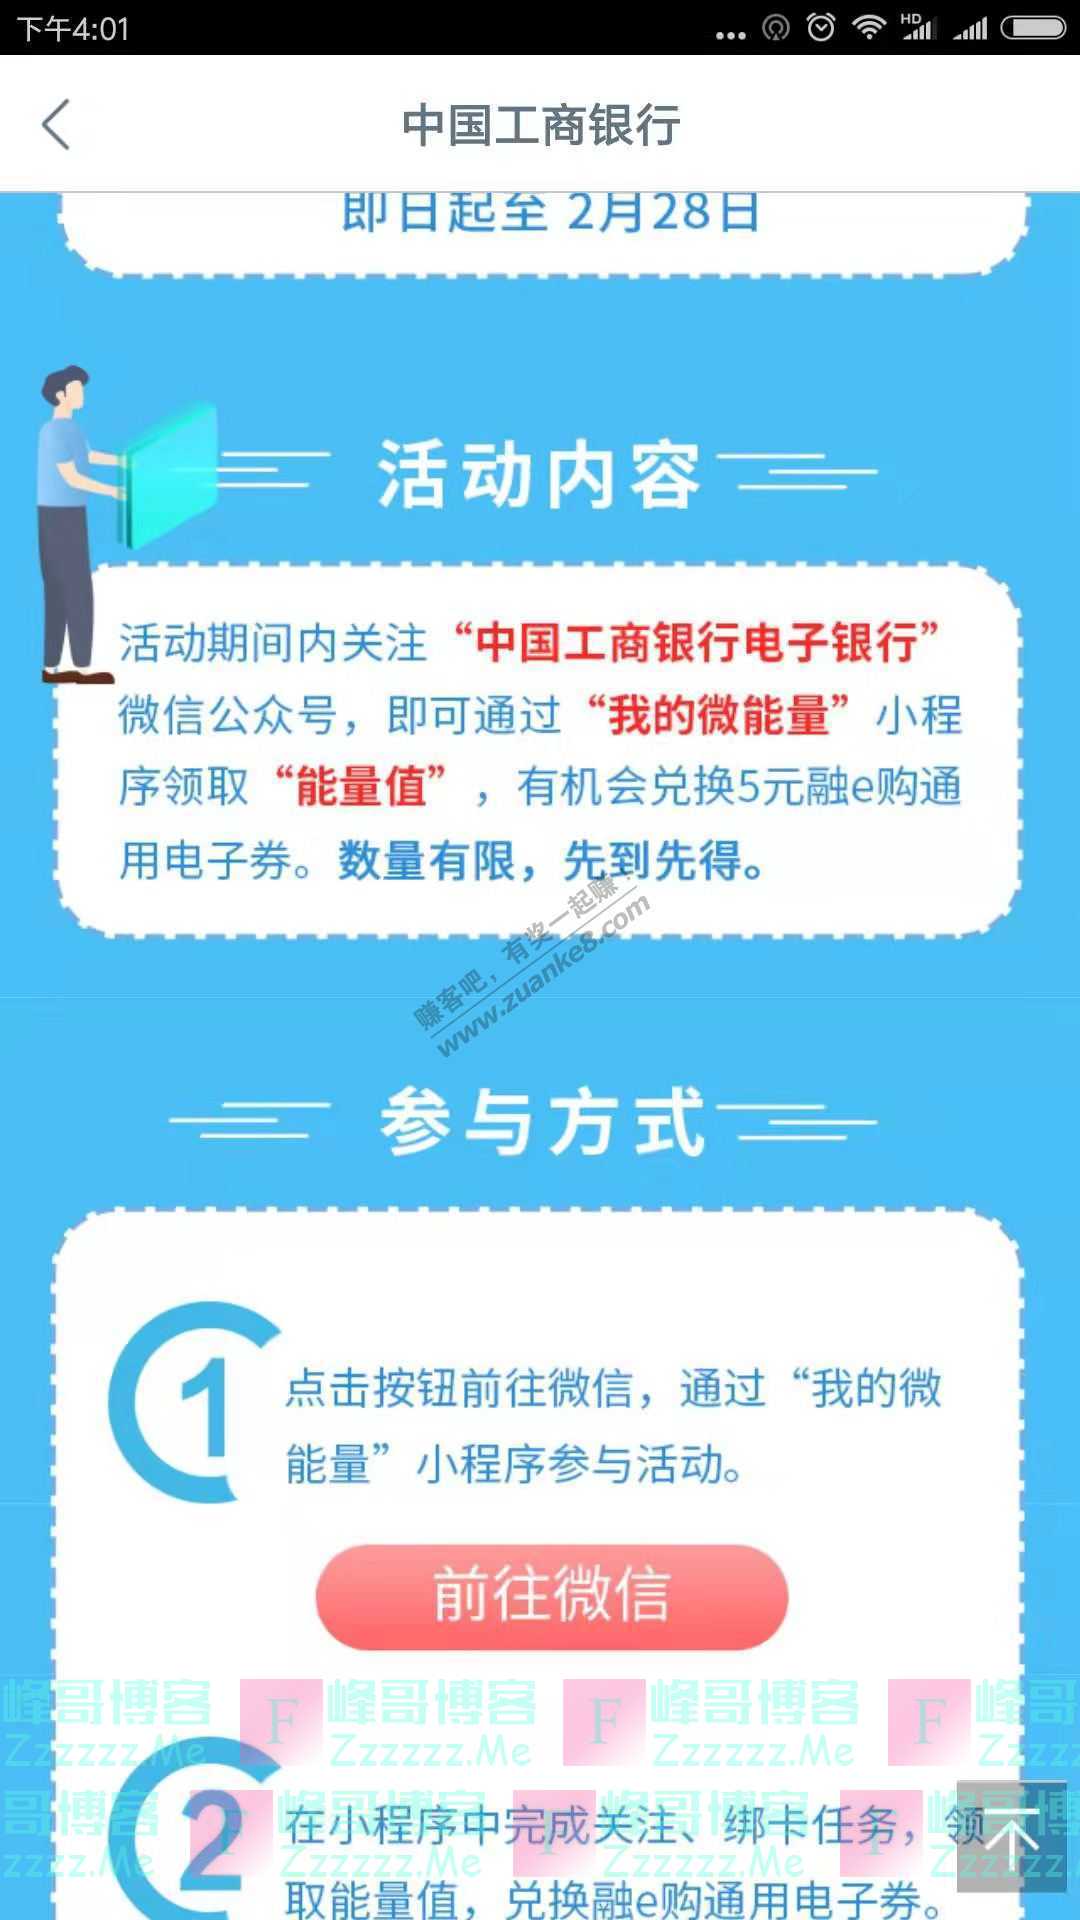 中国工商银行电子银行关注送5元通用券（截止2月28日）